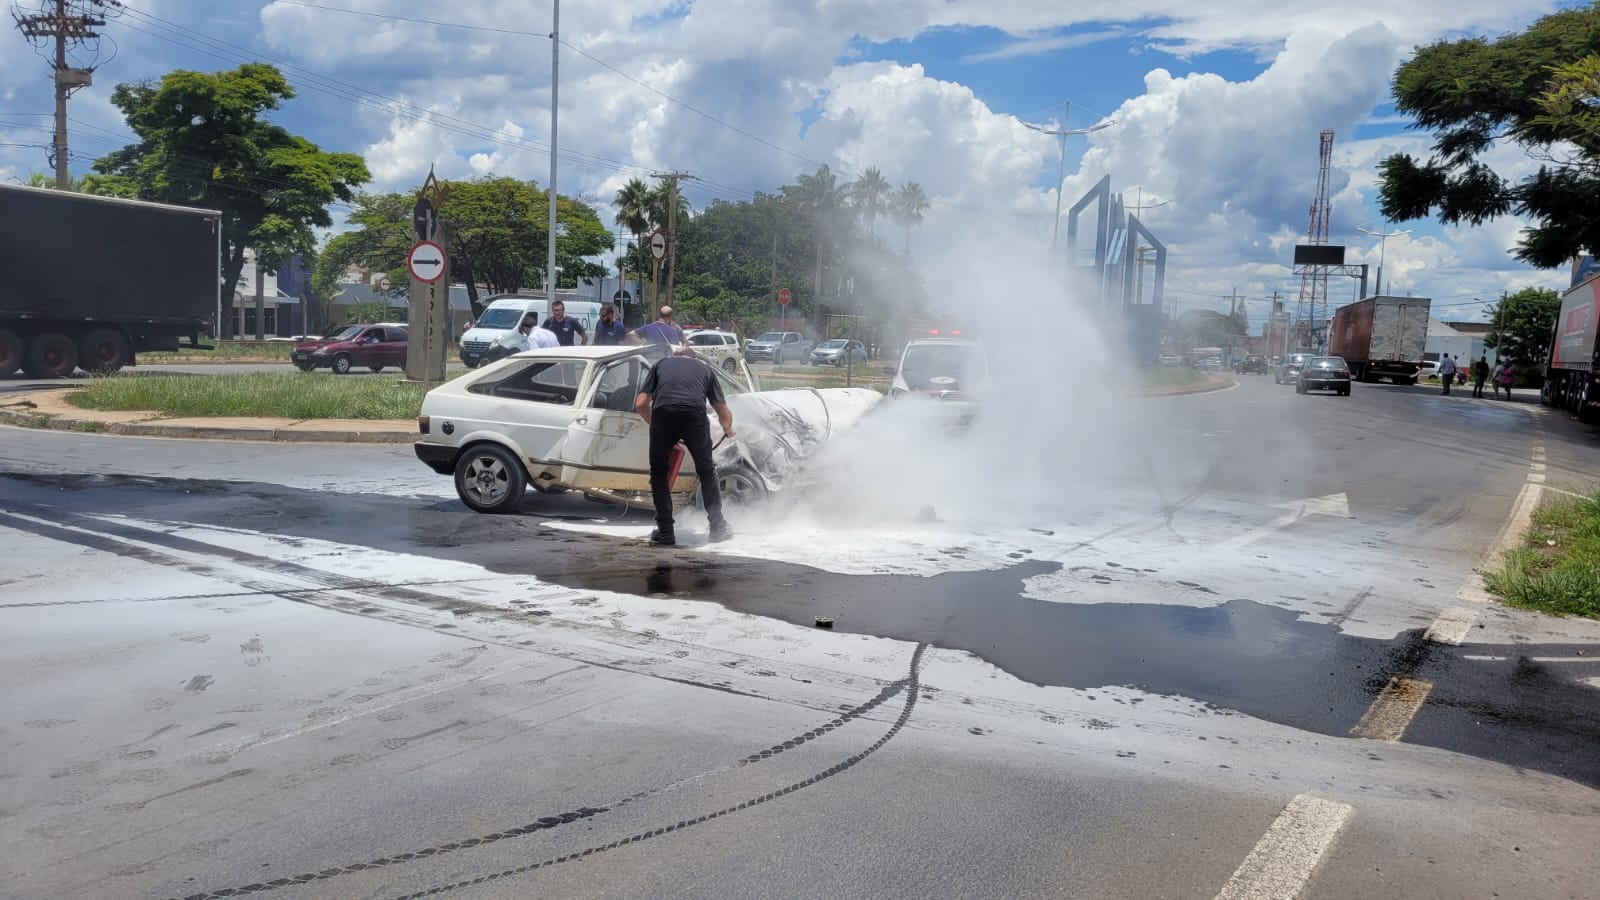 Veículo pega fogo após colisão com carreta na Av Major José Levy Sobrinho